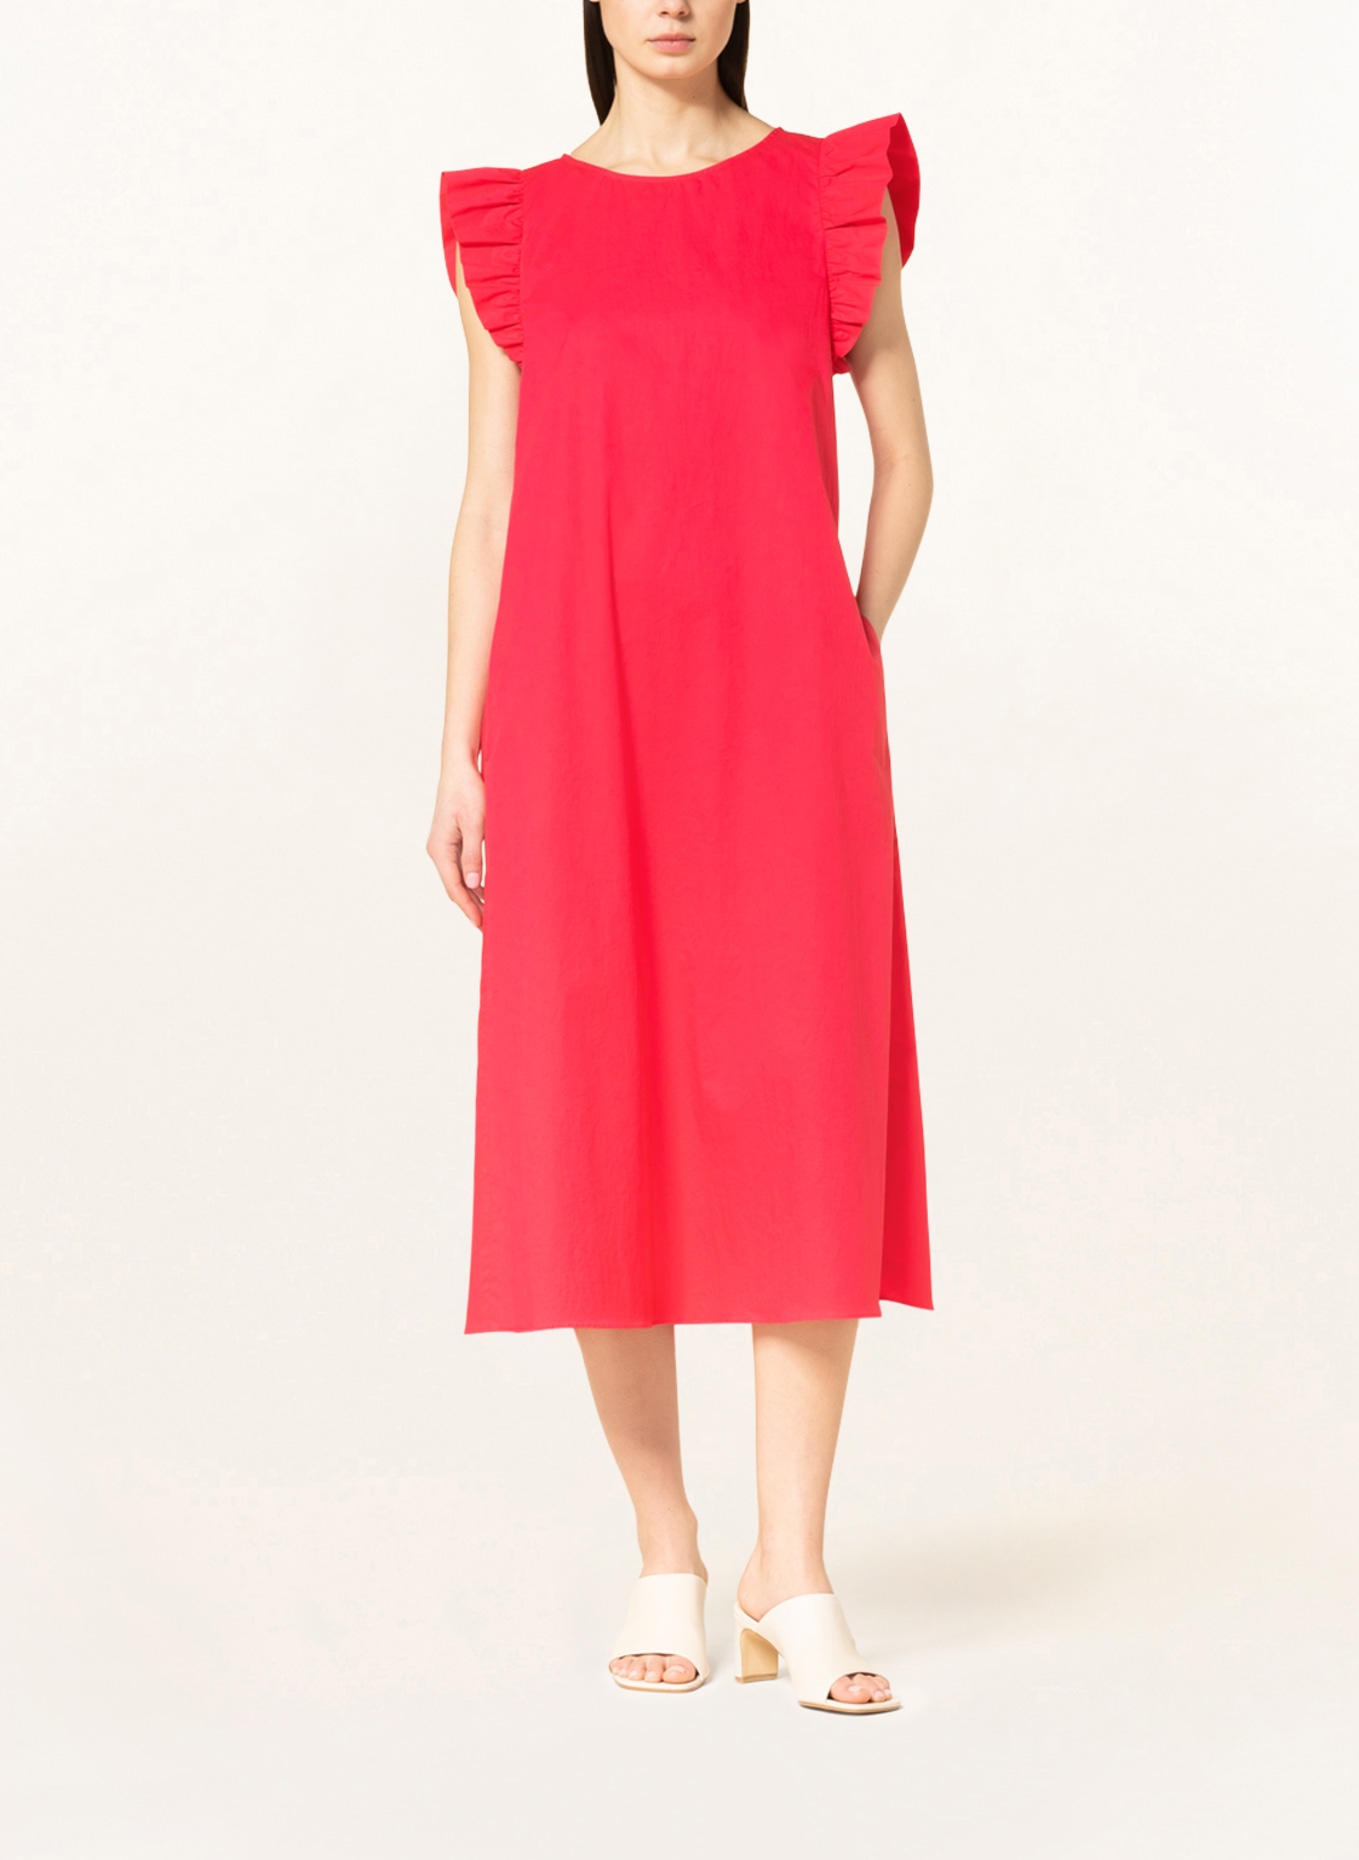 RIANI Dress, Color: FUCHSIA (Image 2)